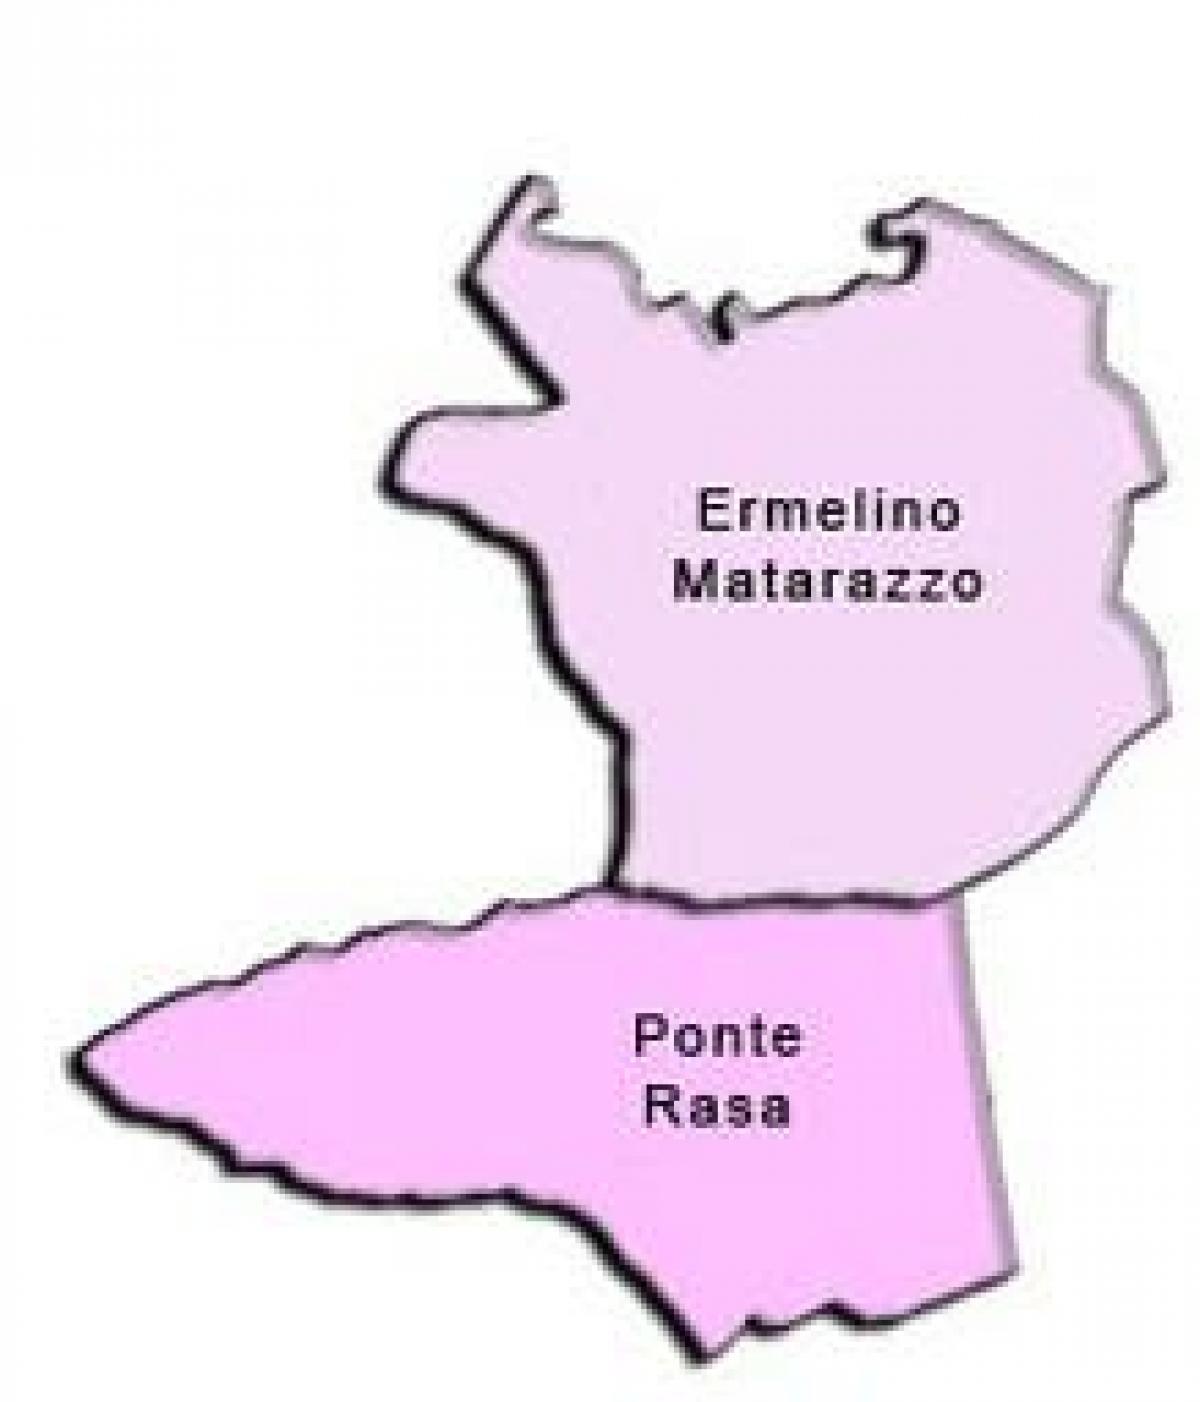 Kort over Ermelino Matarazzo sub-præfekturet